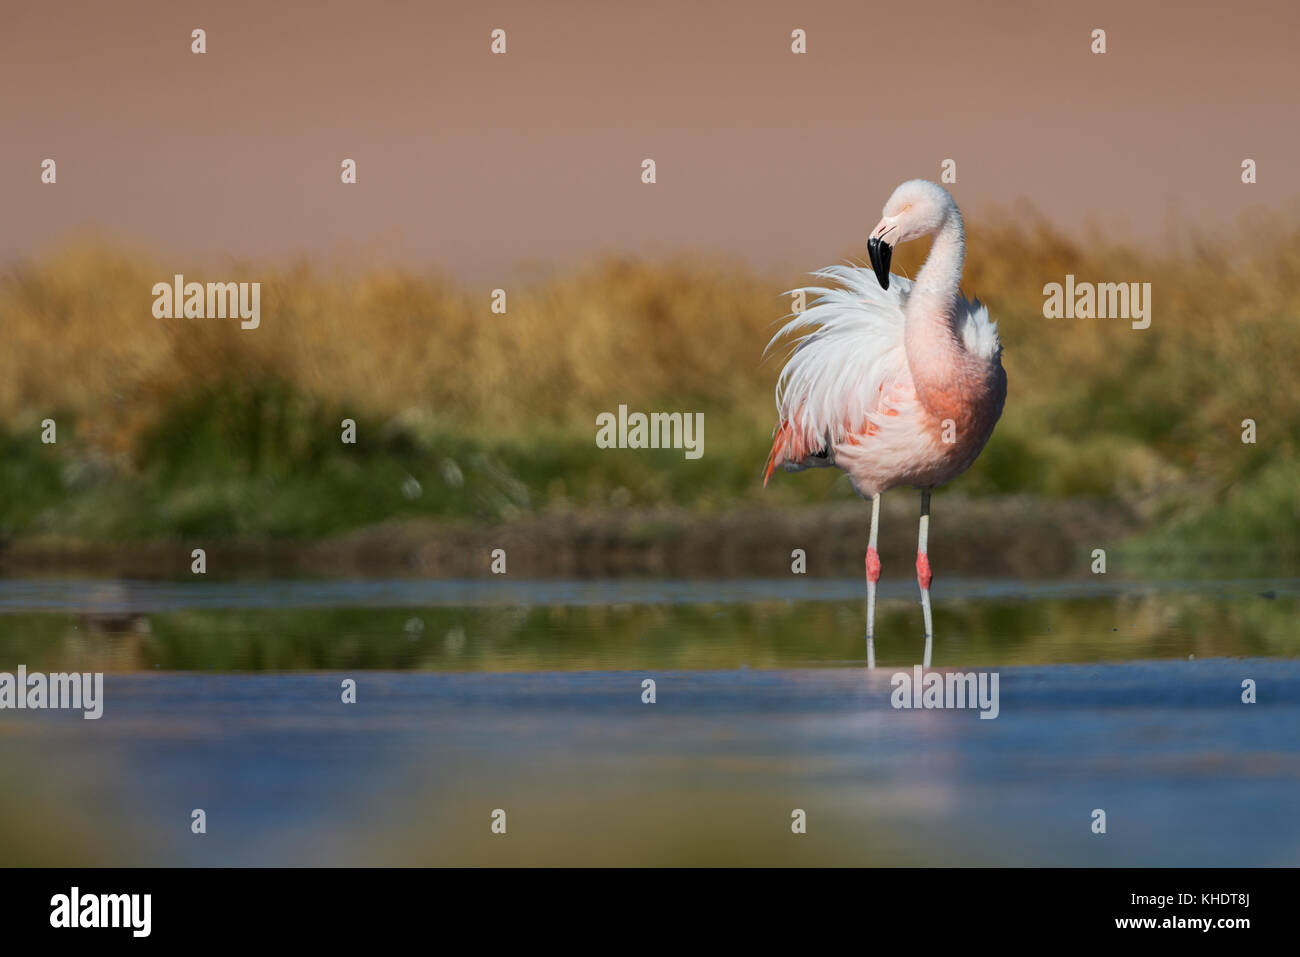 Chilean Flamingo hoenicopterus chilensis Stock Photo